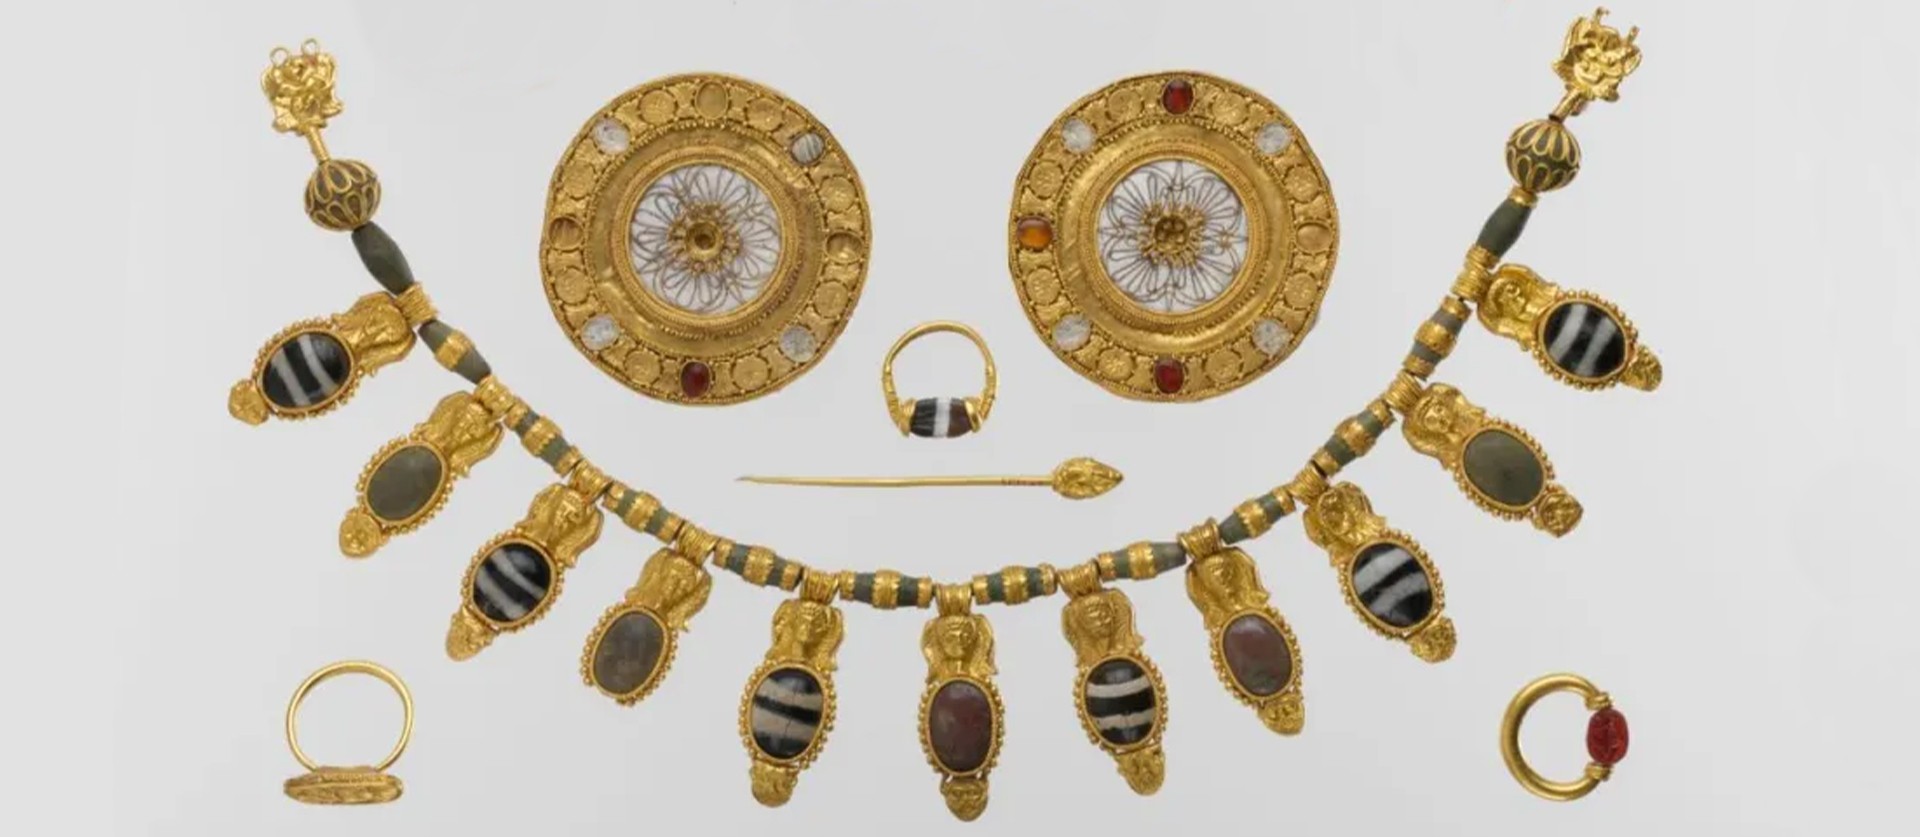 gioielli nella Grecia antica, I gioielli nella Grecia antica tra natura, mitologia e raffinatezza